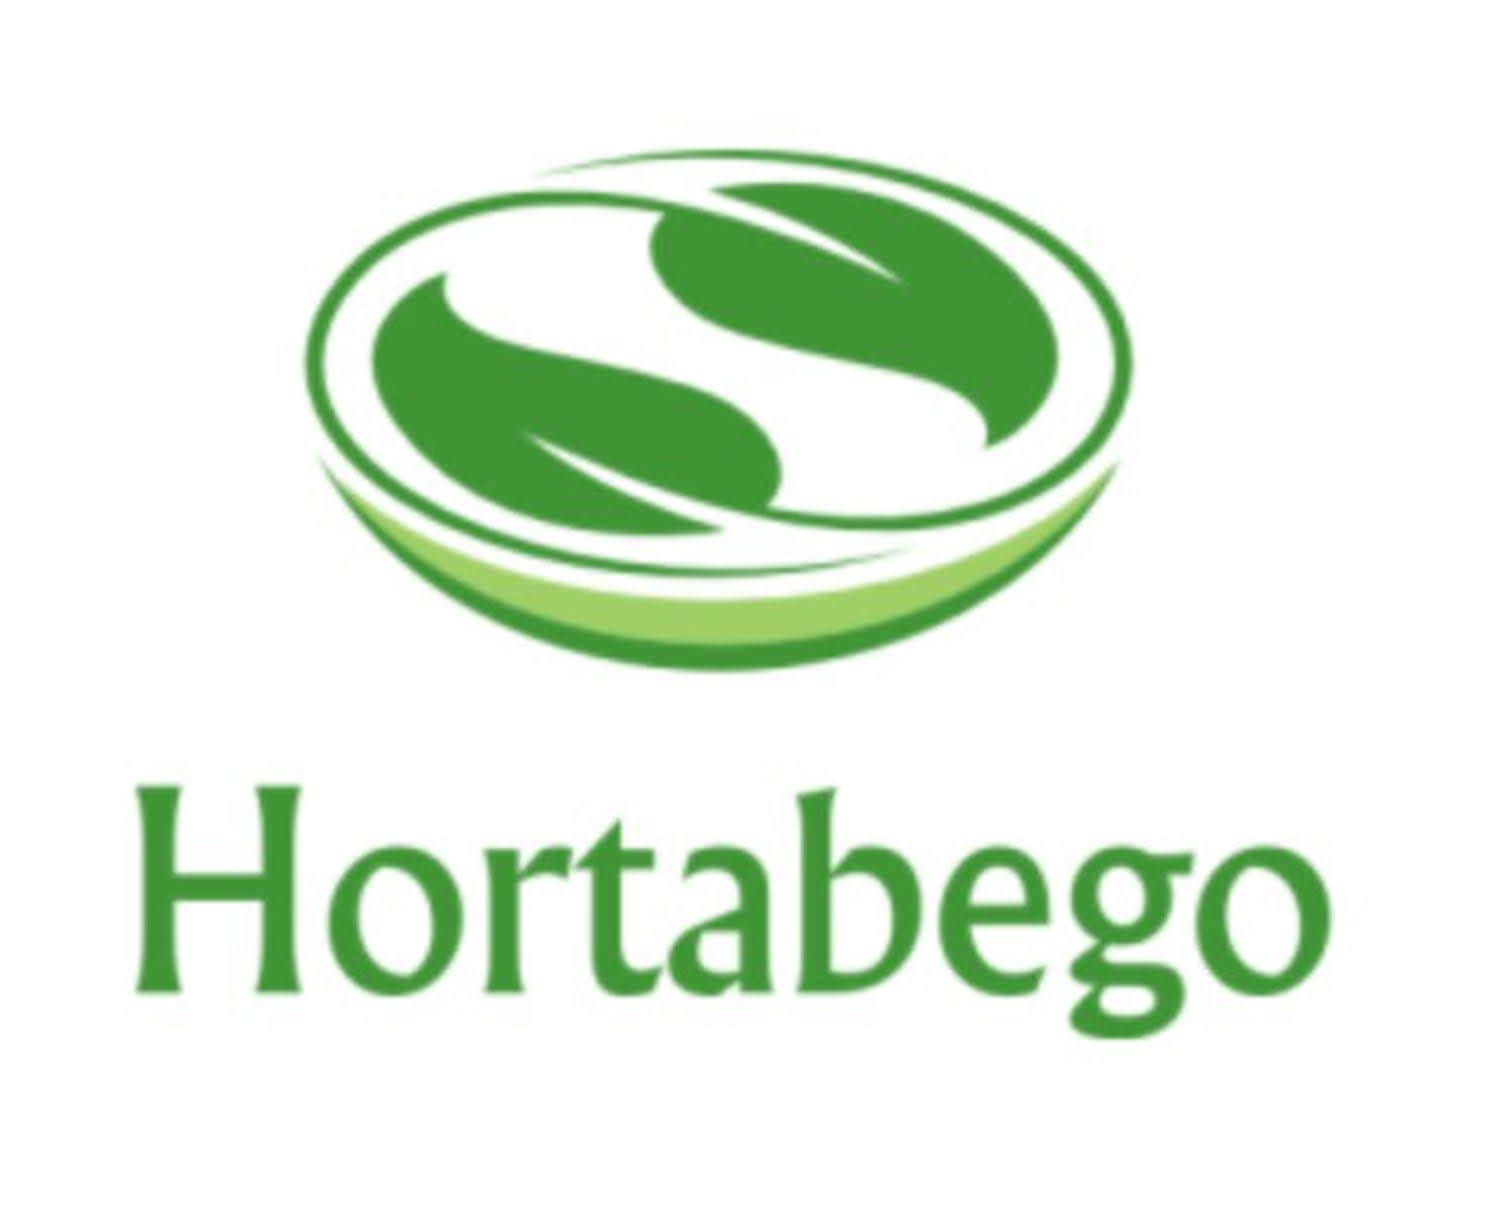 Hortabego